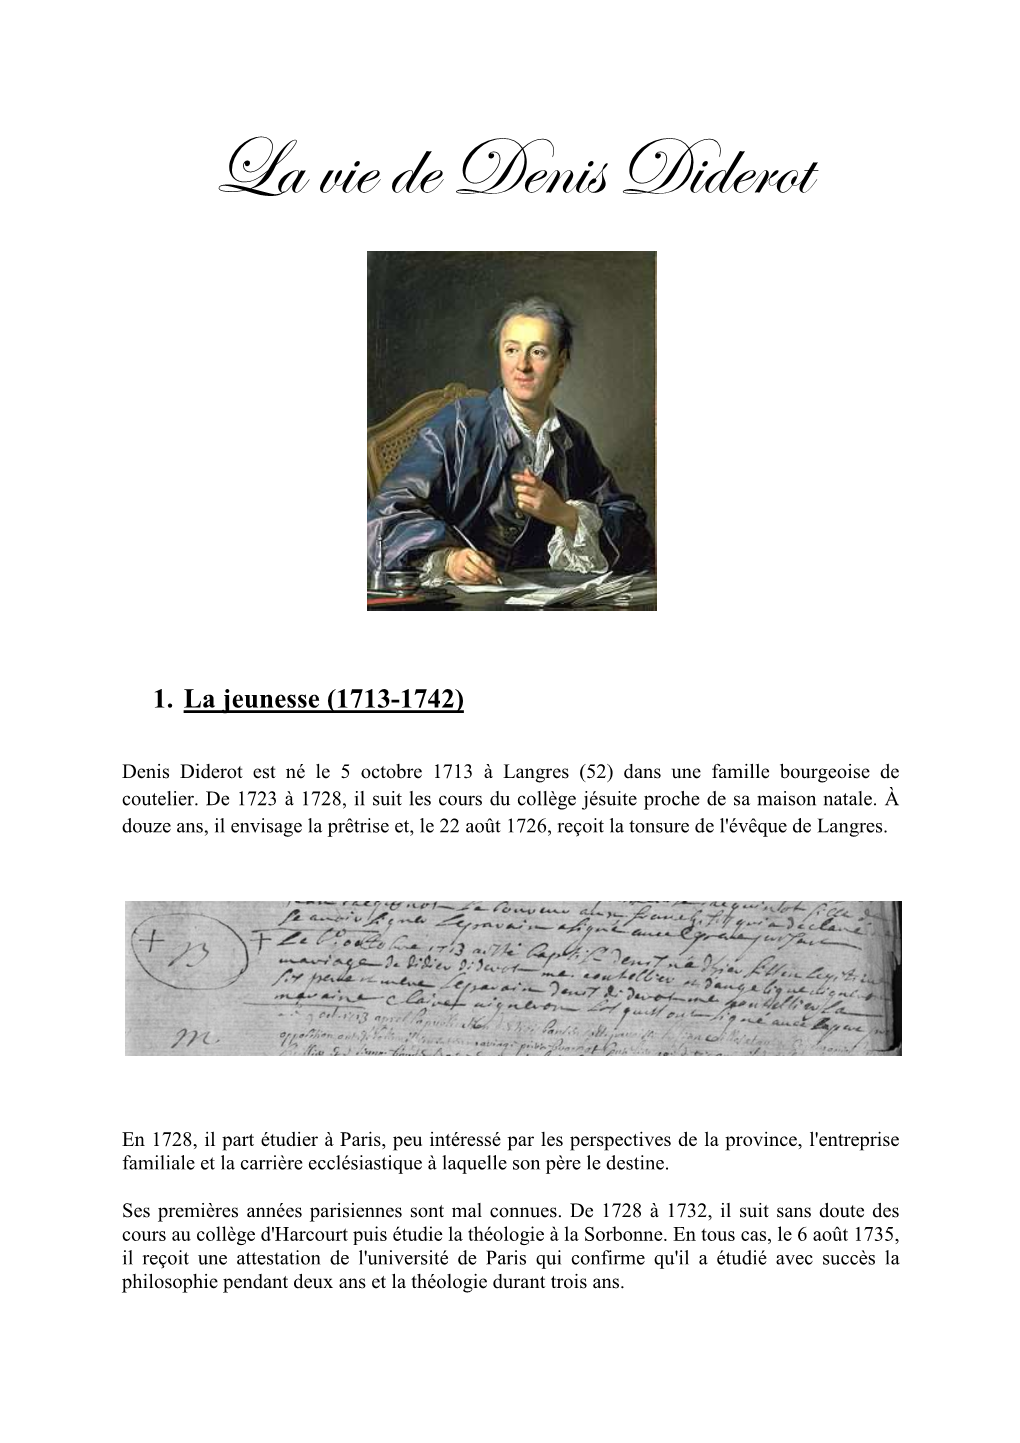 Denis Diderot Est Né Le 5 Octobre 1713 À Langres (52) Dans Une Famille Bourgeoise De Coutelier